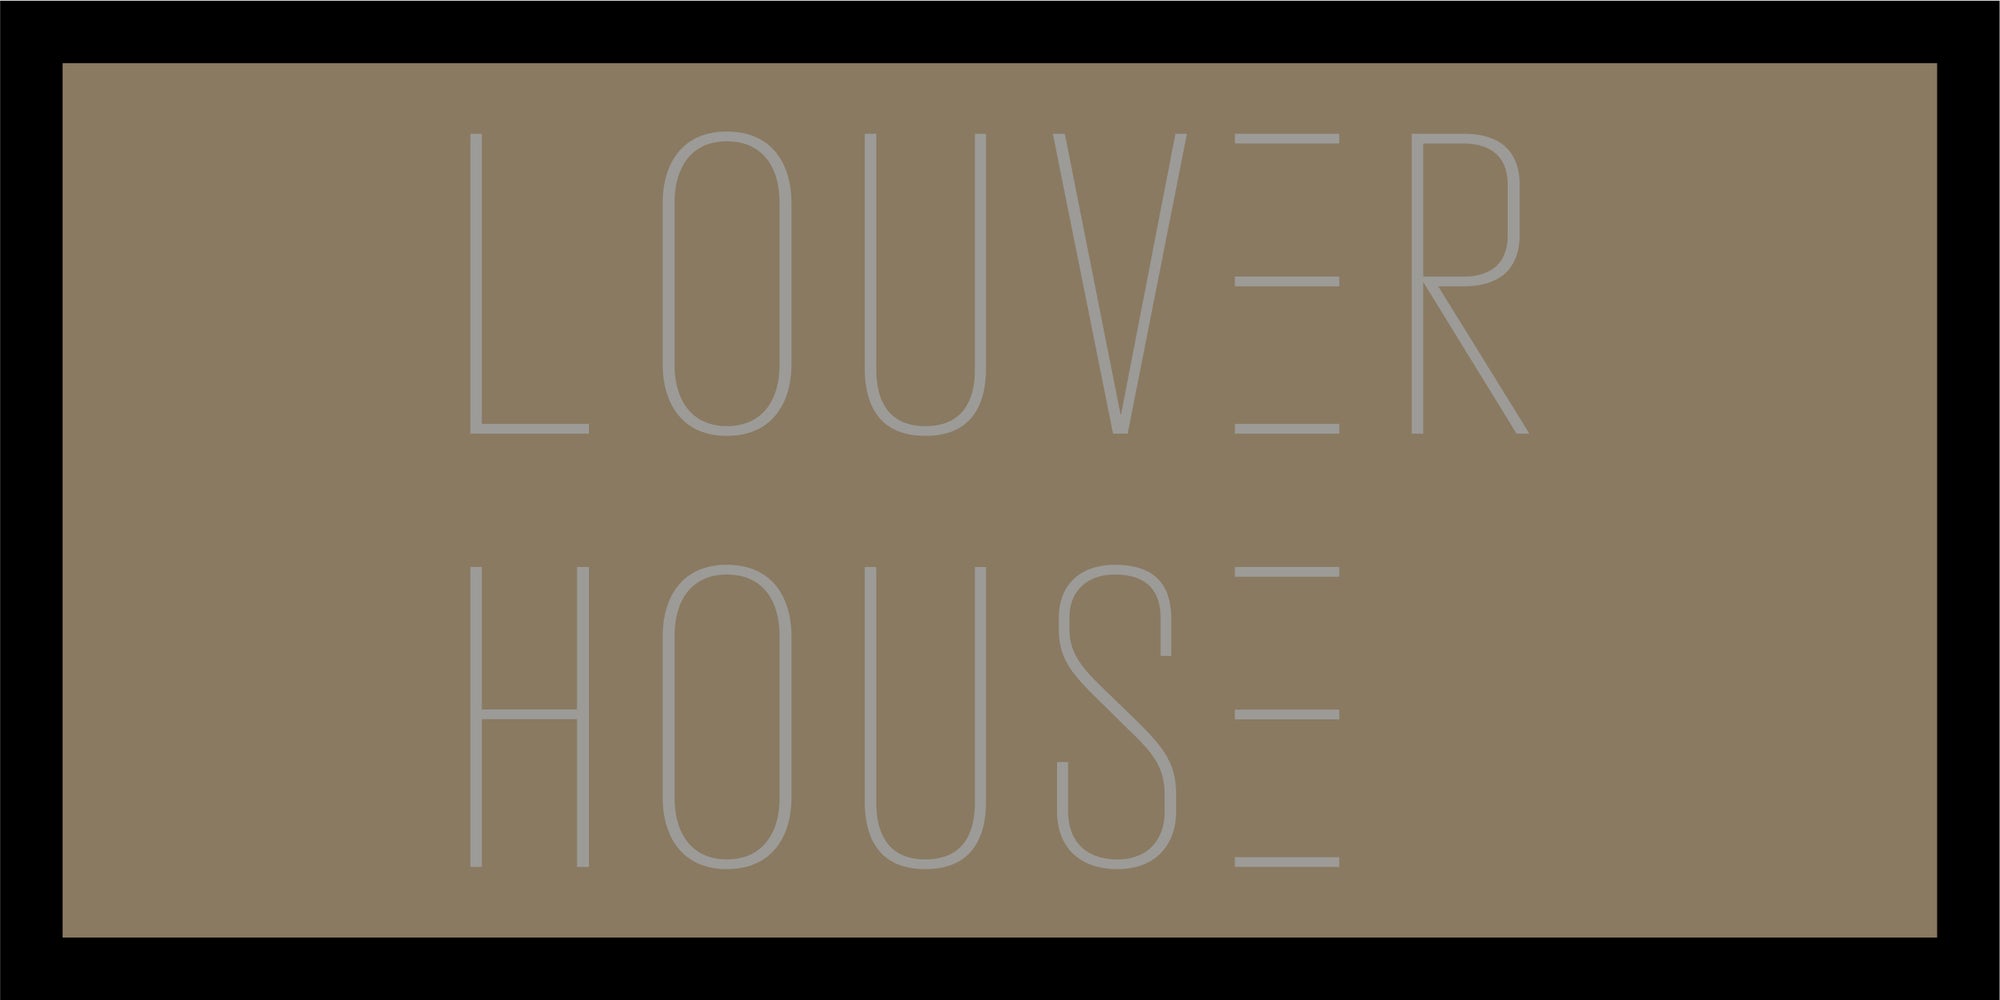 Louver House